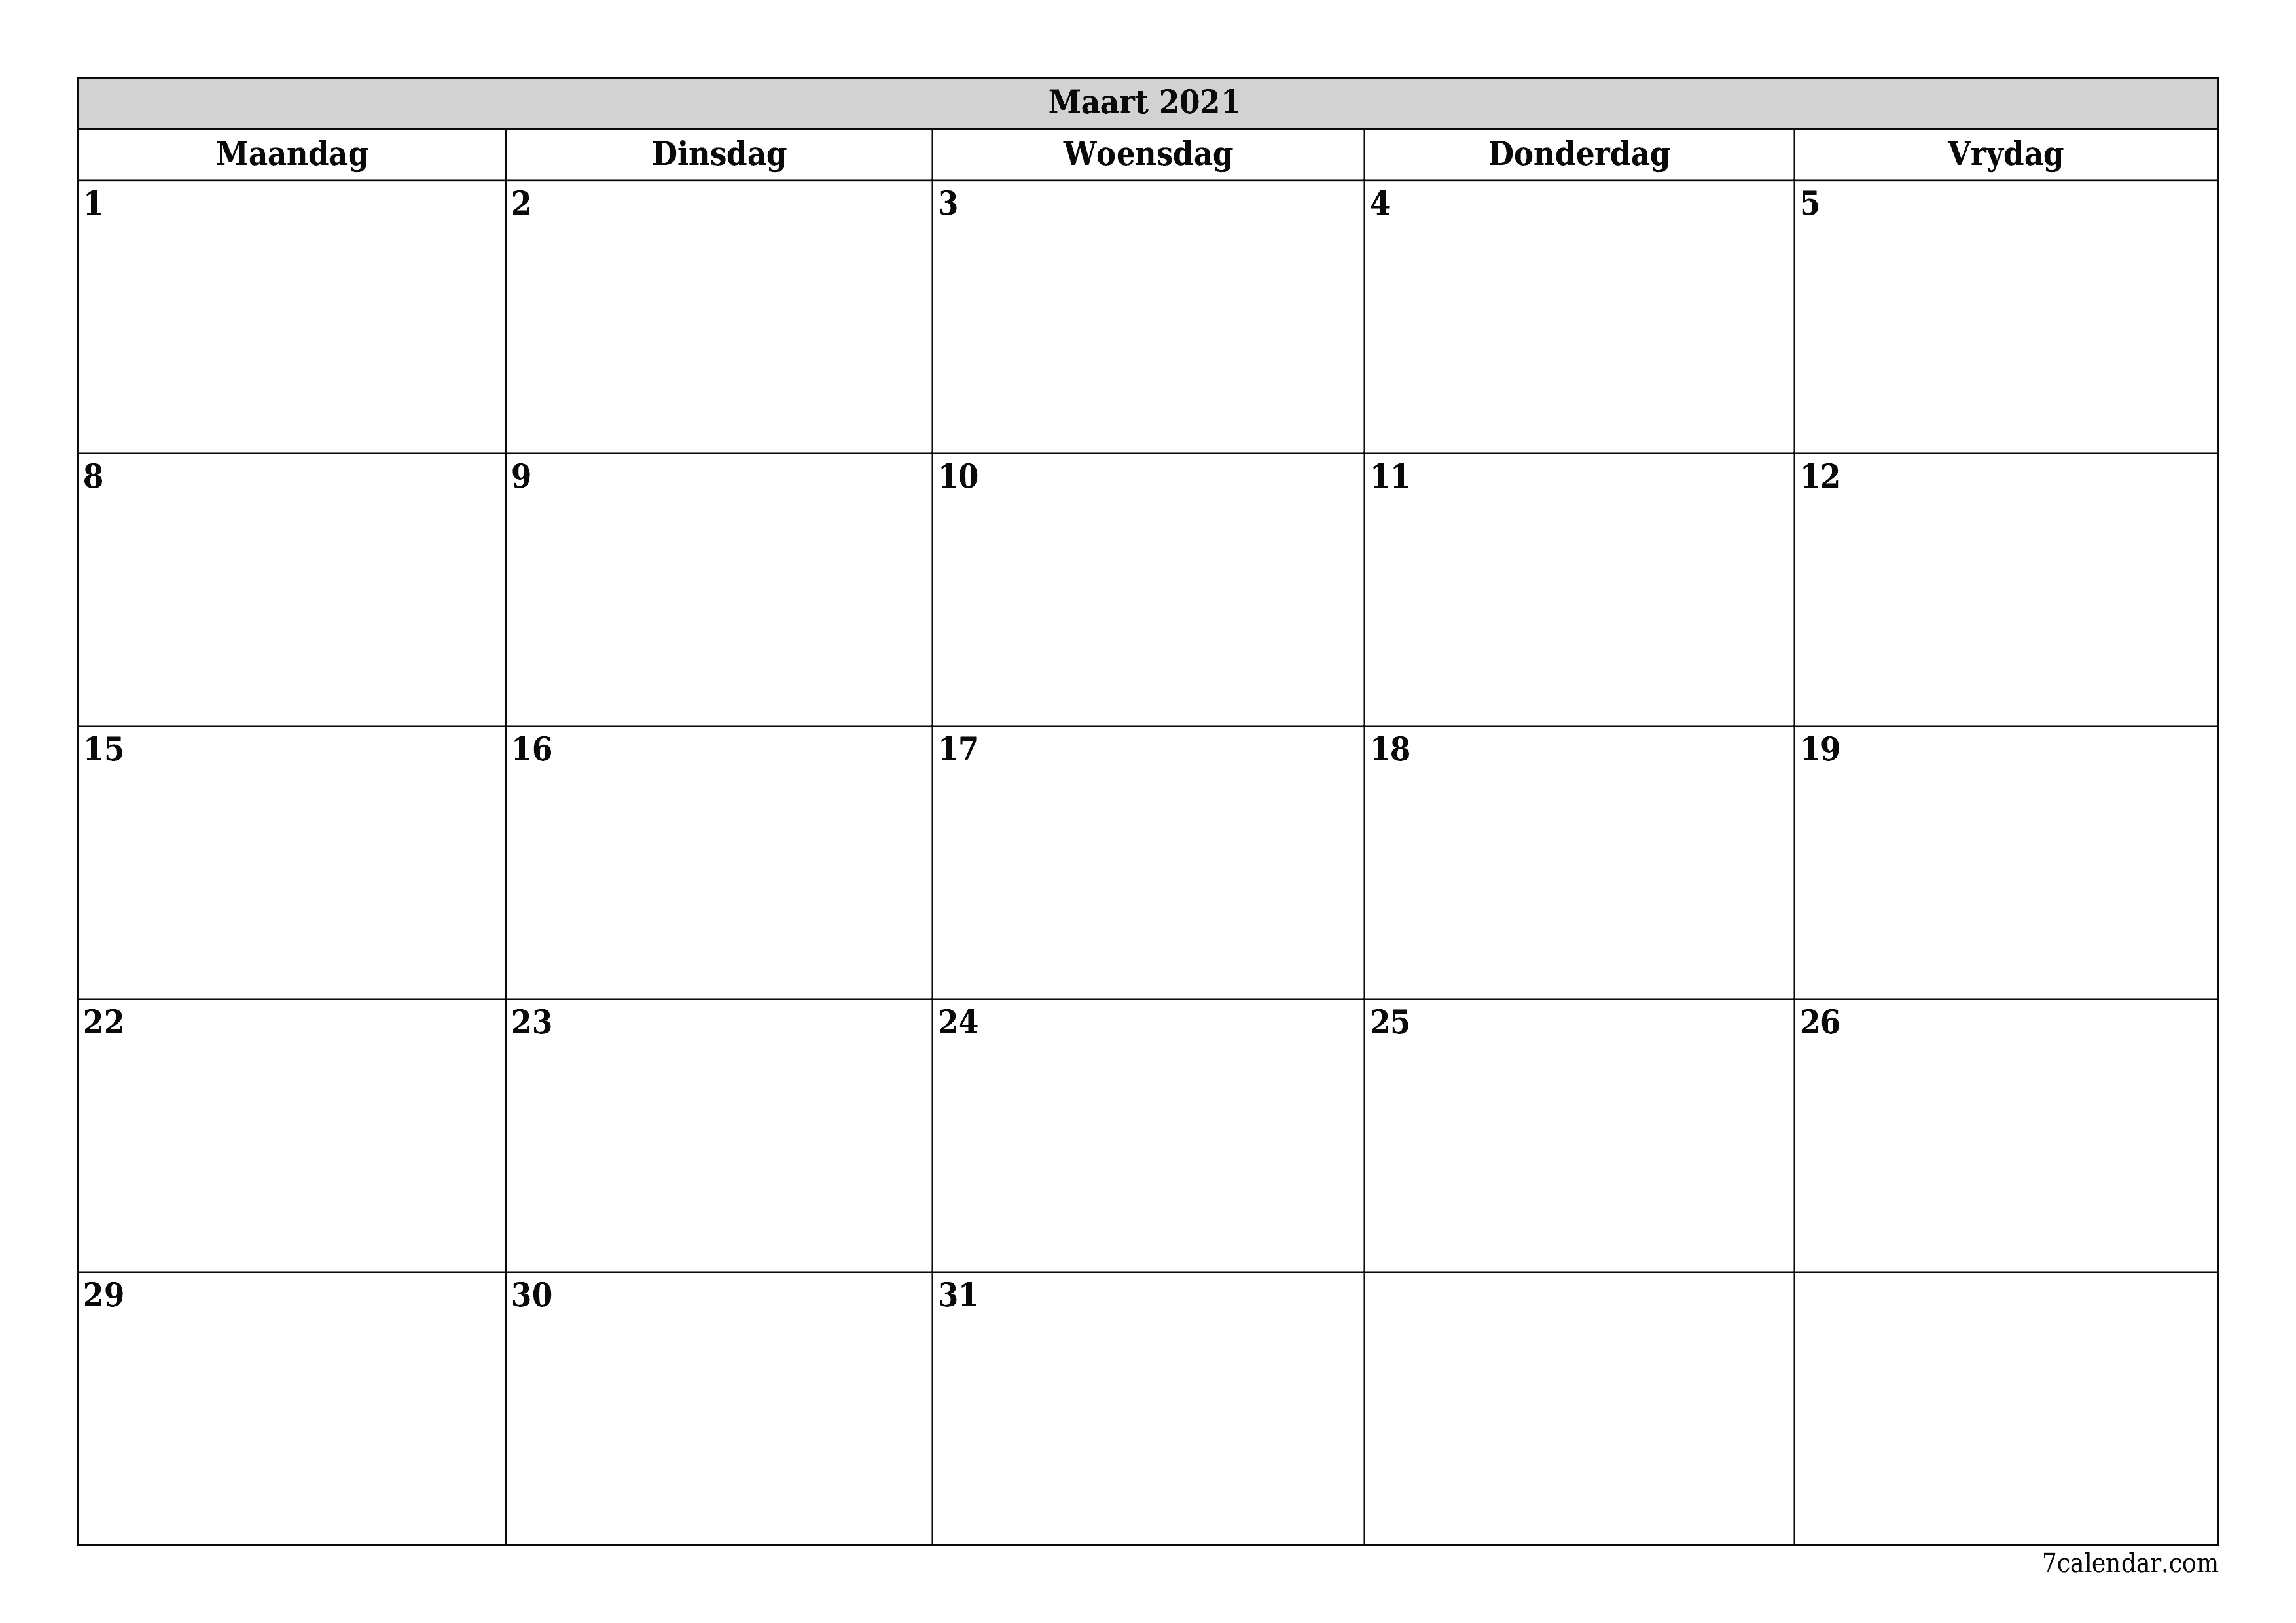 Leë maandelikse drukbare kalender en beplanner vir maand Maart 2021 met notas stoor en druk na PDF PNG Afrikaans